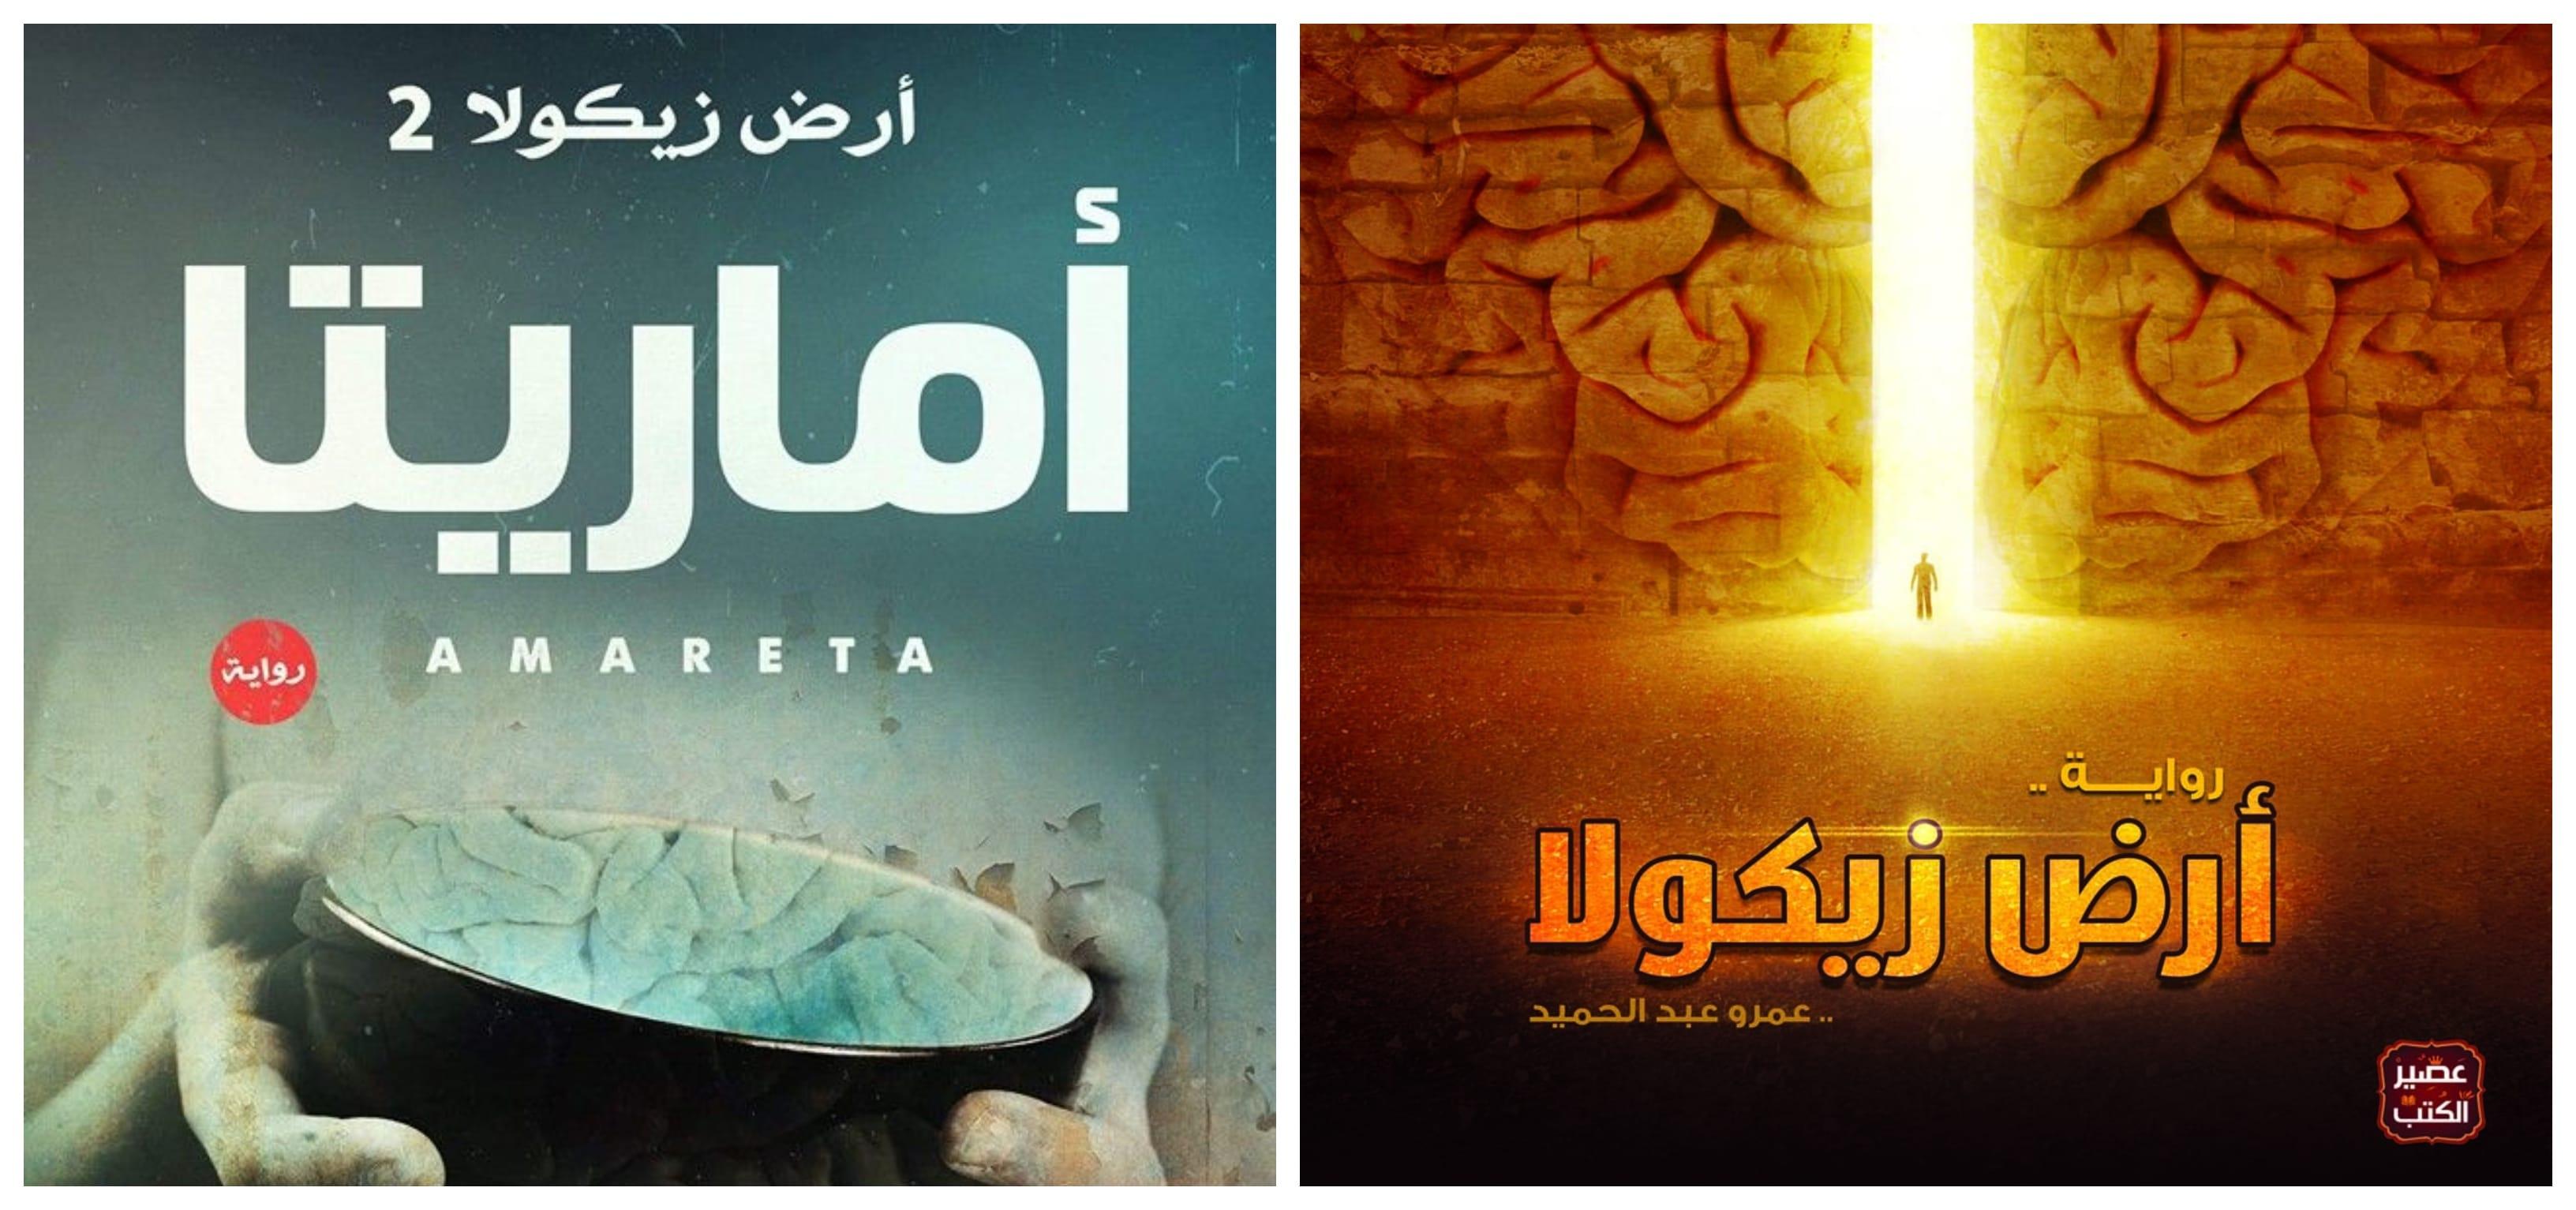 ثنائية عمرو عبد الحميد: رواية أرض زيكولا وجزئها الثاني رواية أماريتا